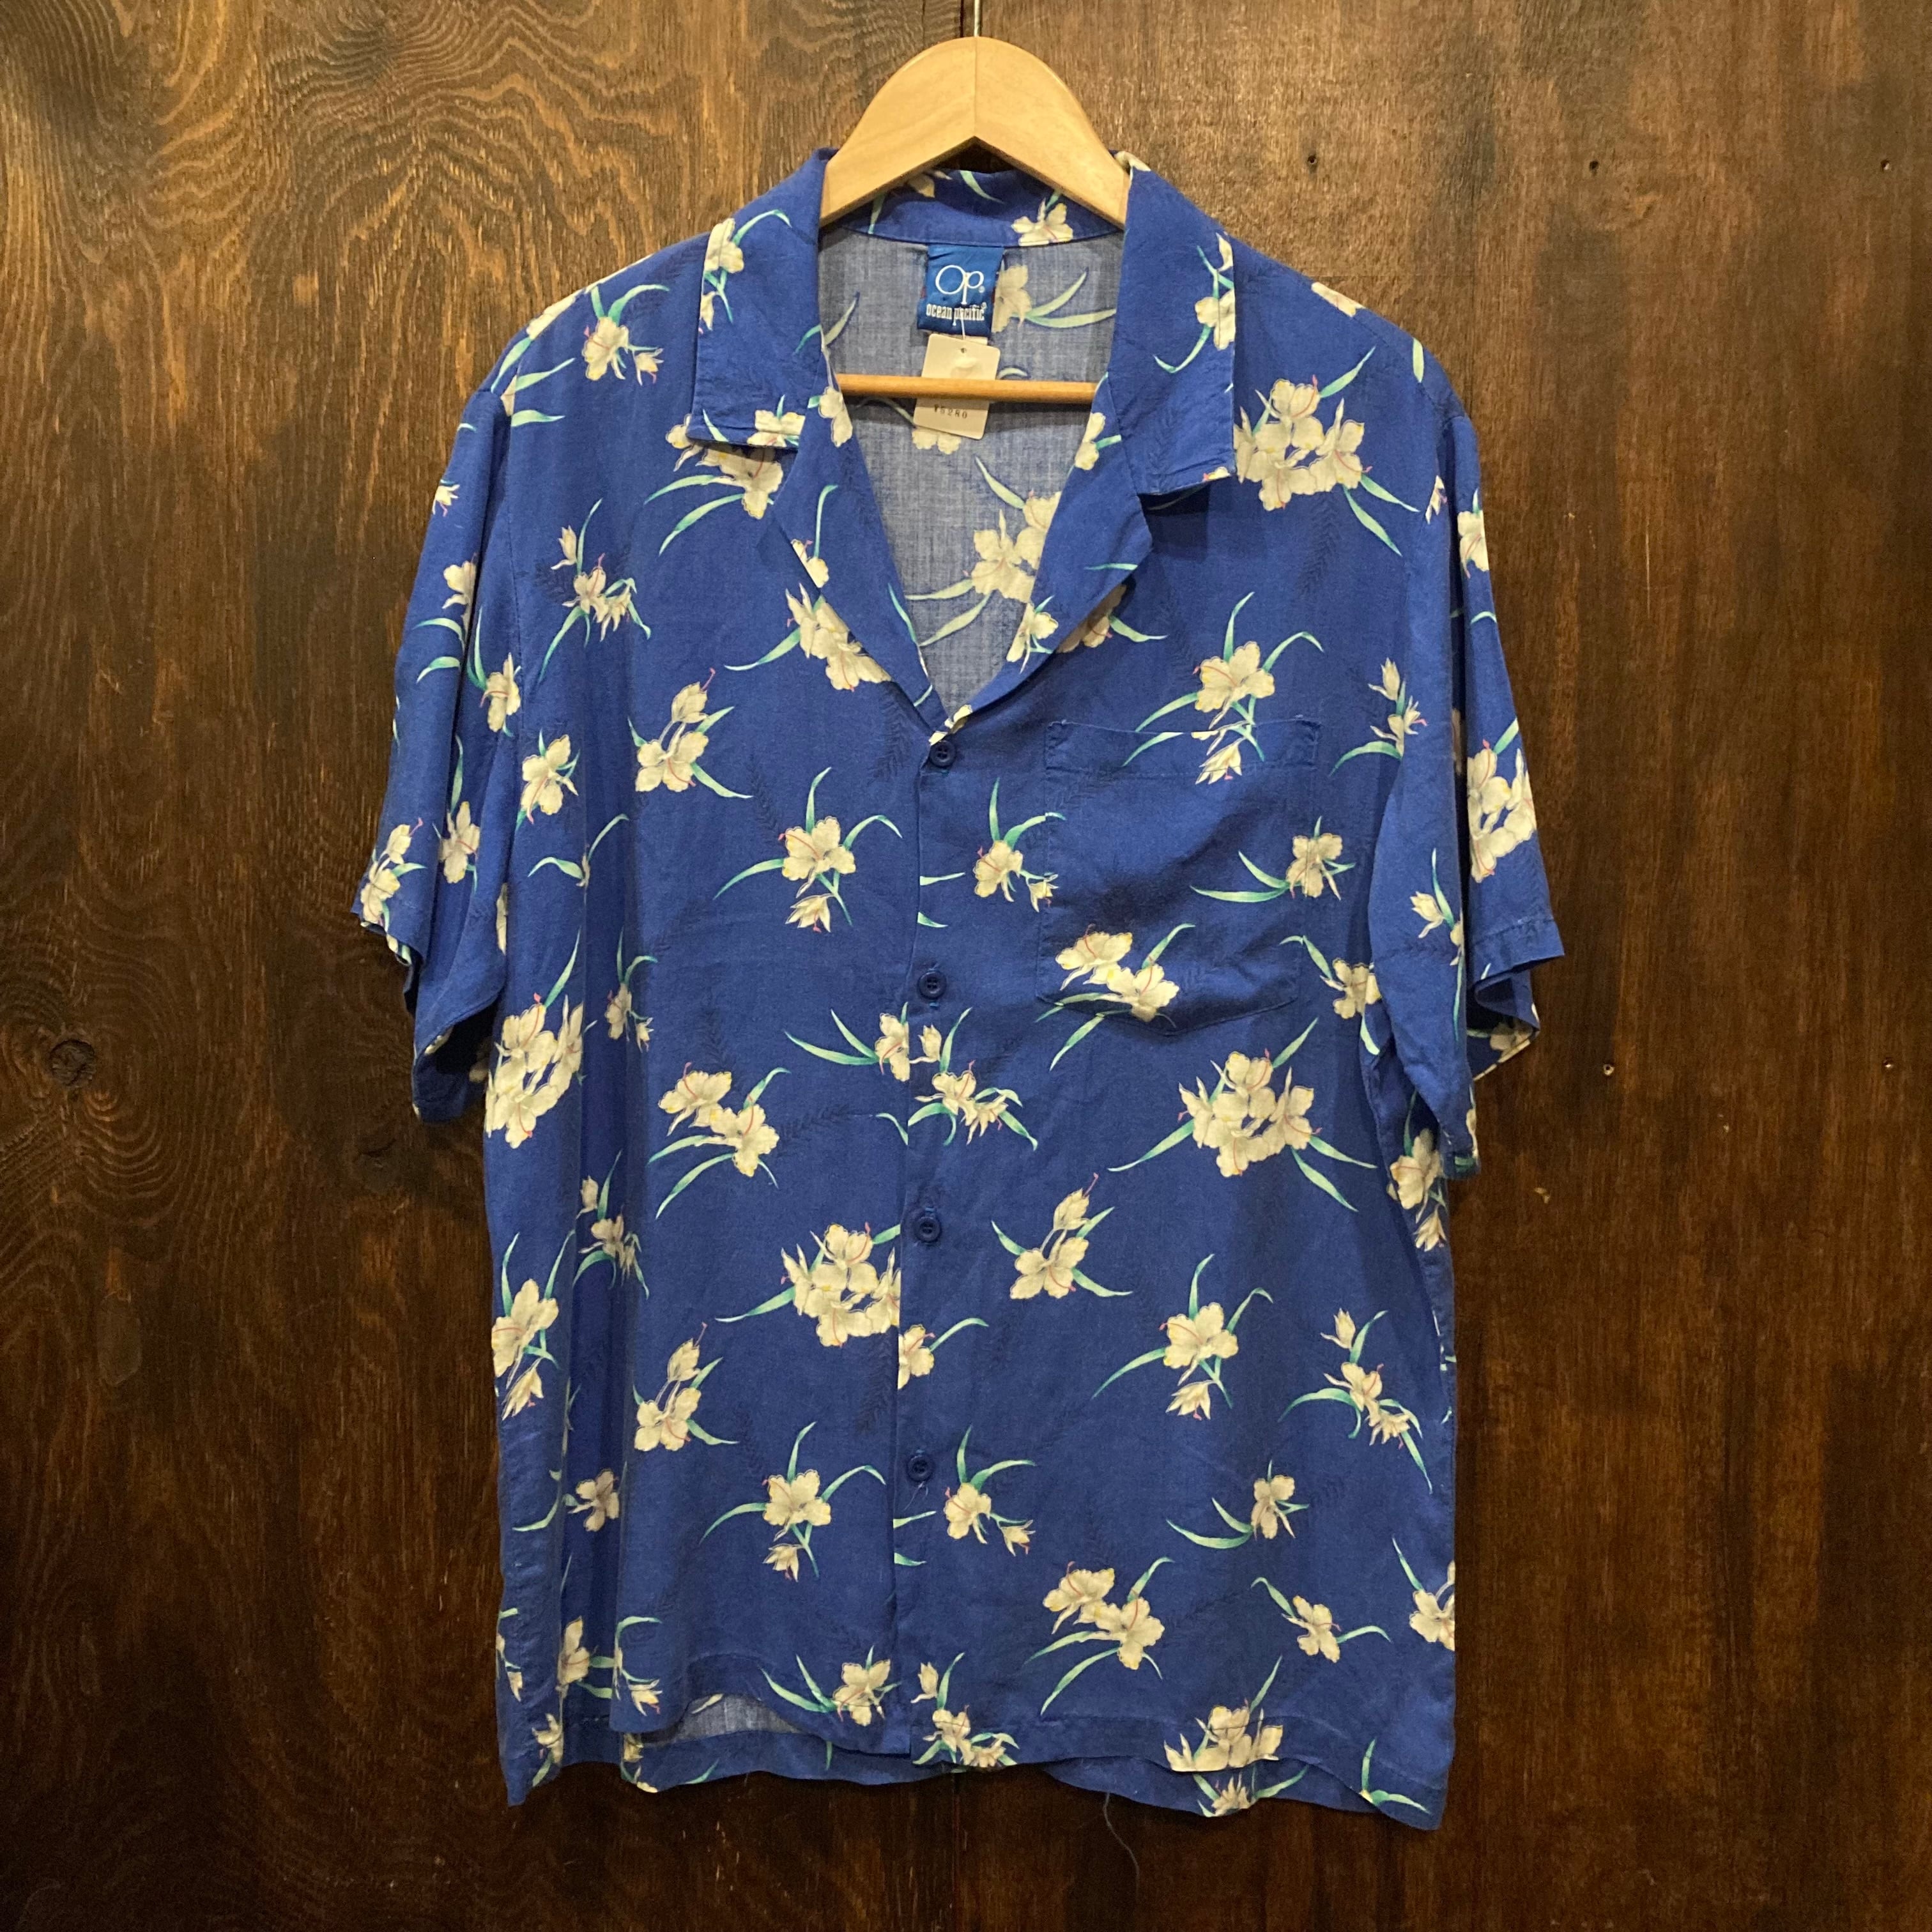 OceanPacificビンテージコットンアロハシャツ(アメリカ製)